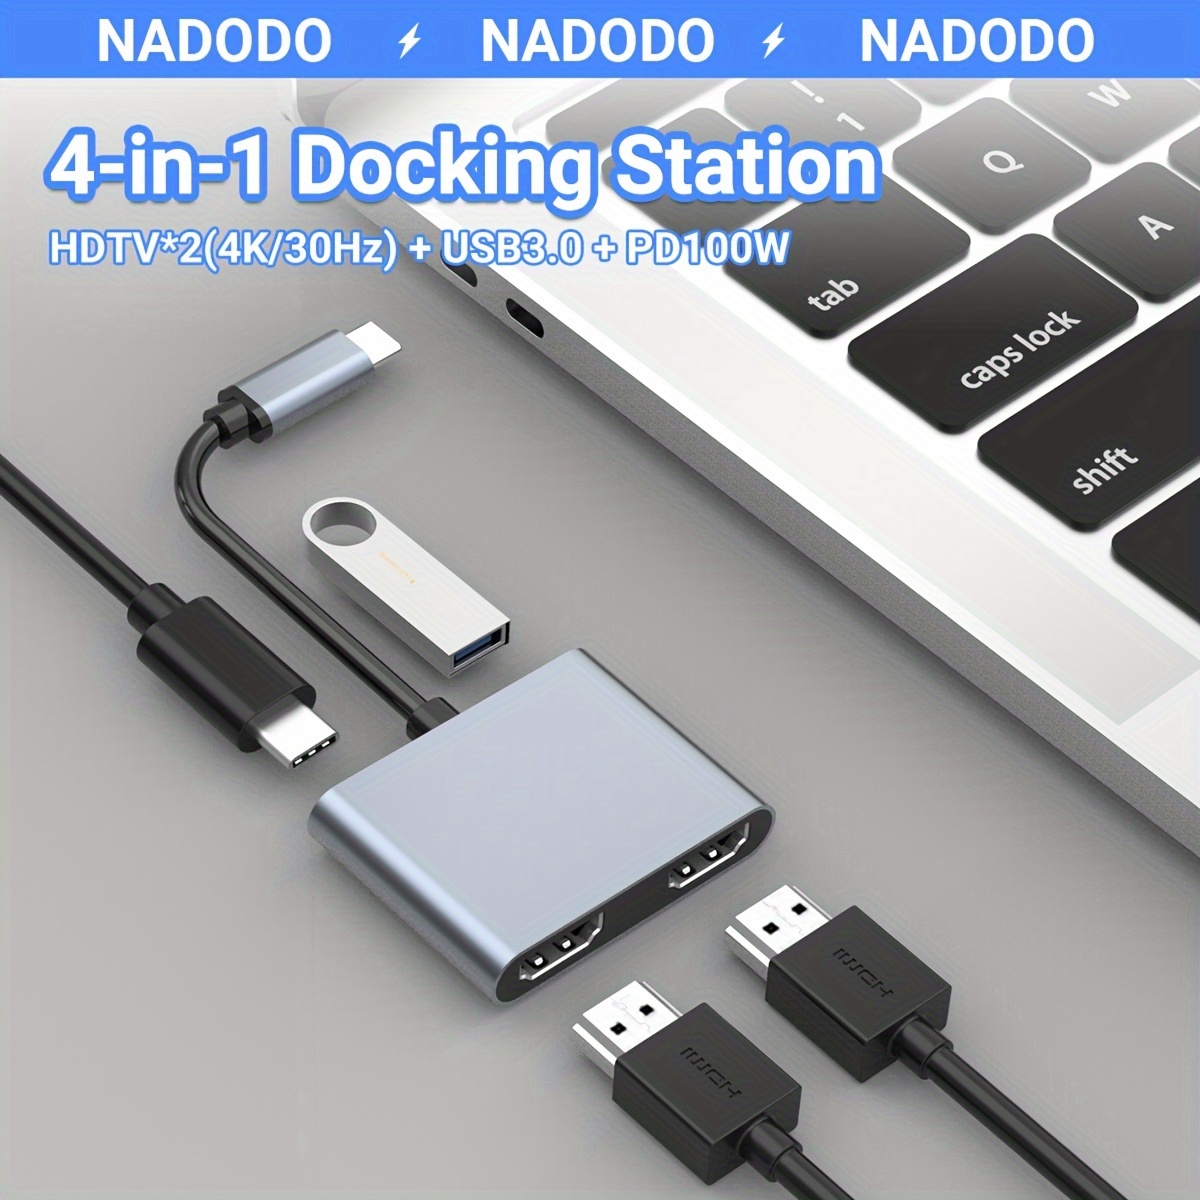 WAVLINK Adaptador USB 3.0 a HDMI VGA, adaptador USB a VGA HDMI con puerto  de audio para múltiples monitores, compatible con Windows 11, 10, 8.1, 7,  XP